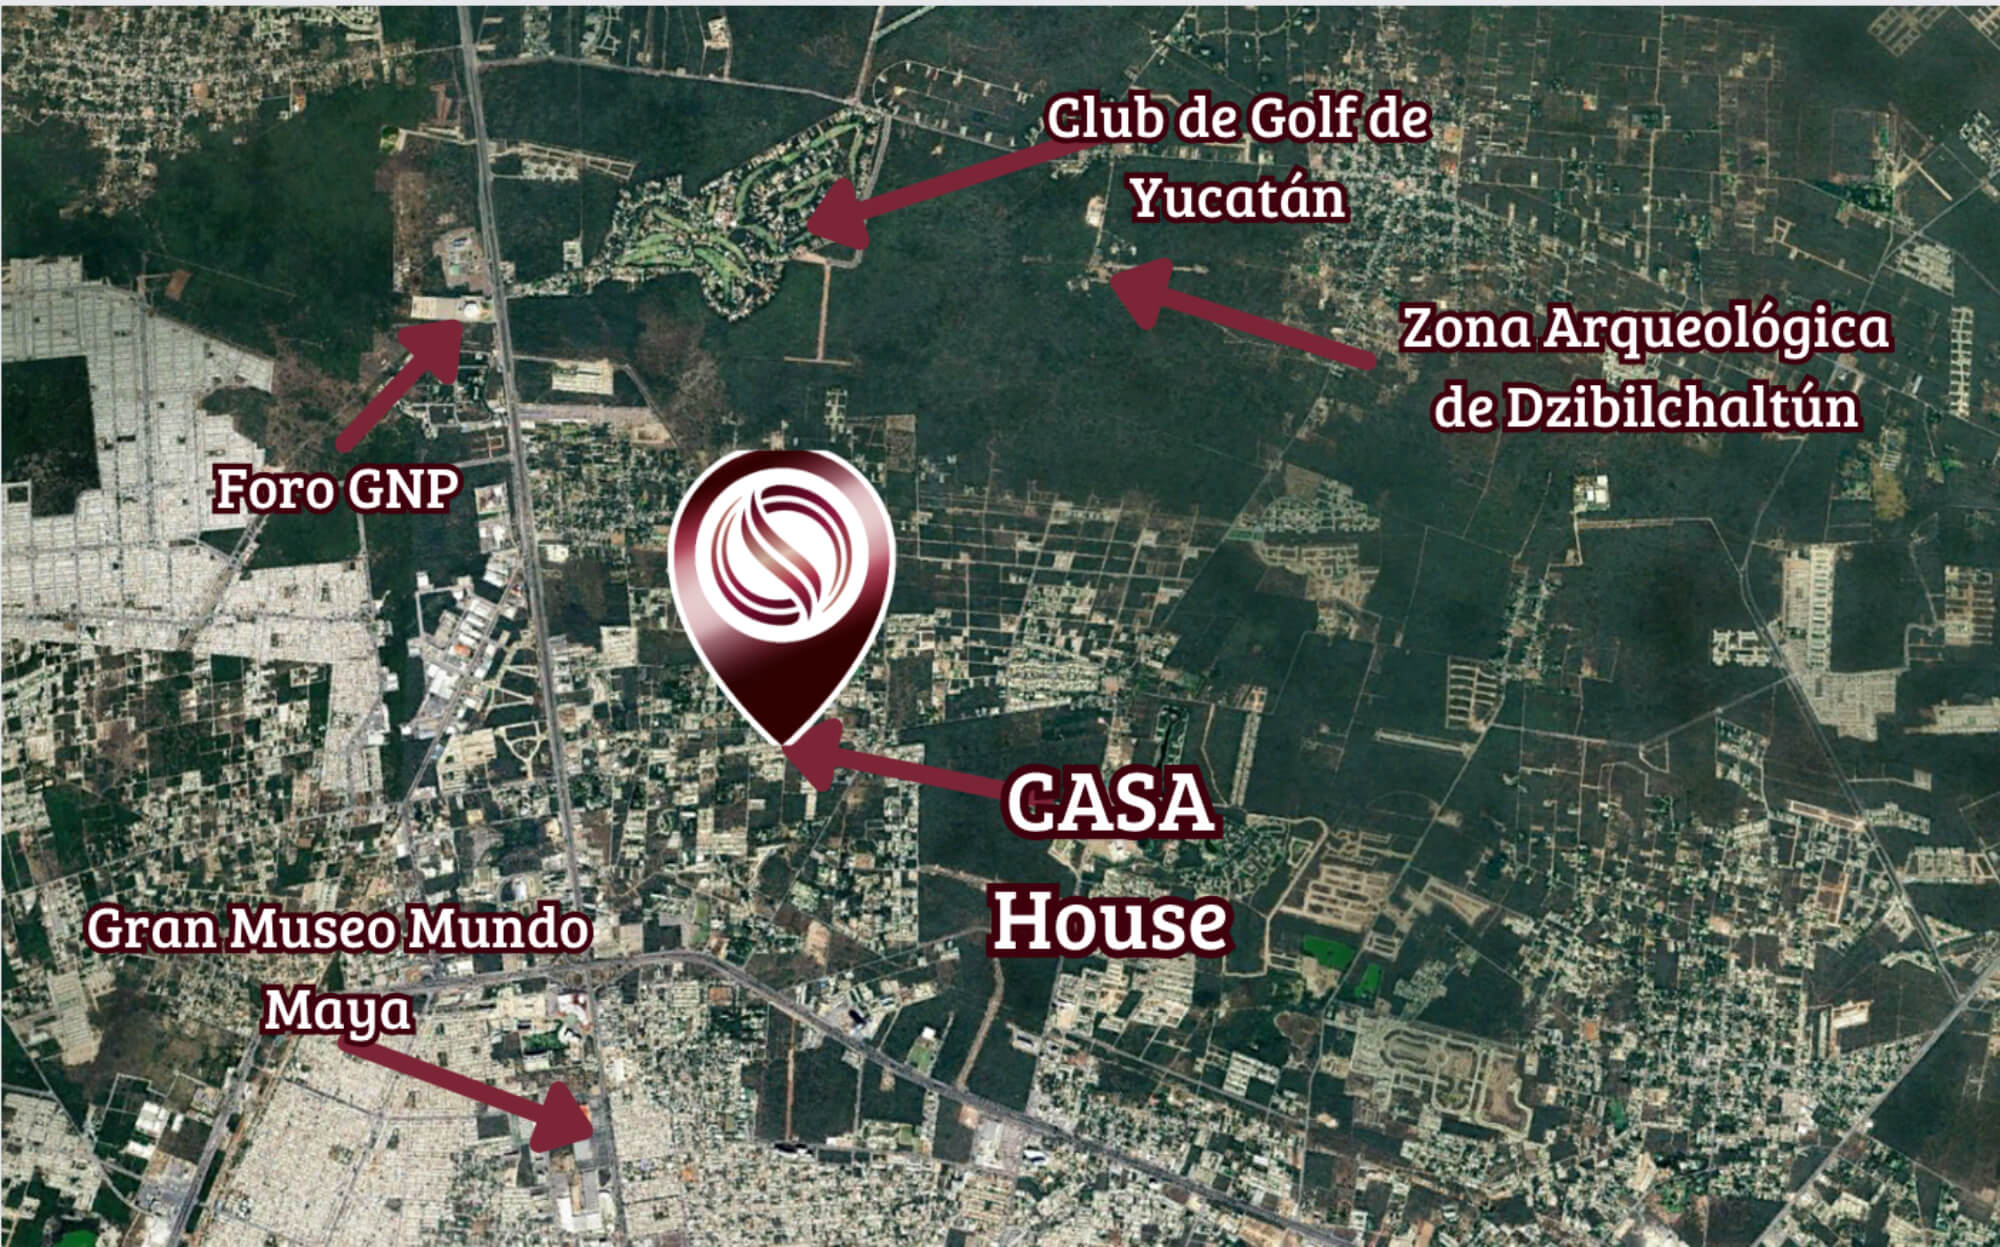 Residencia con jardín, alberca, cochera para 2 autos, en venta, Xcanatun, Merida, Yucatan.